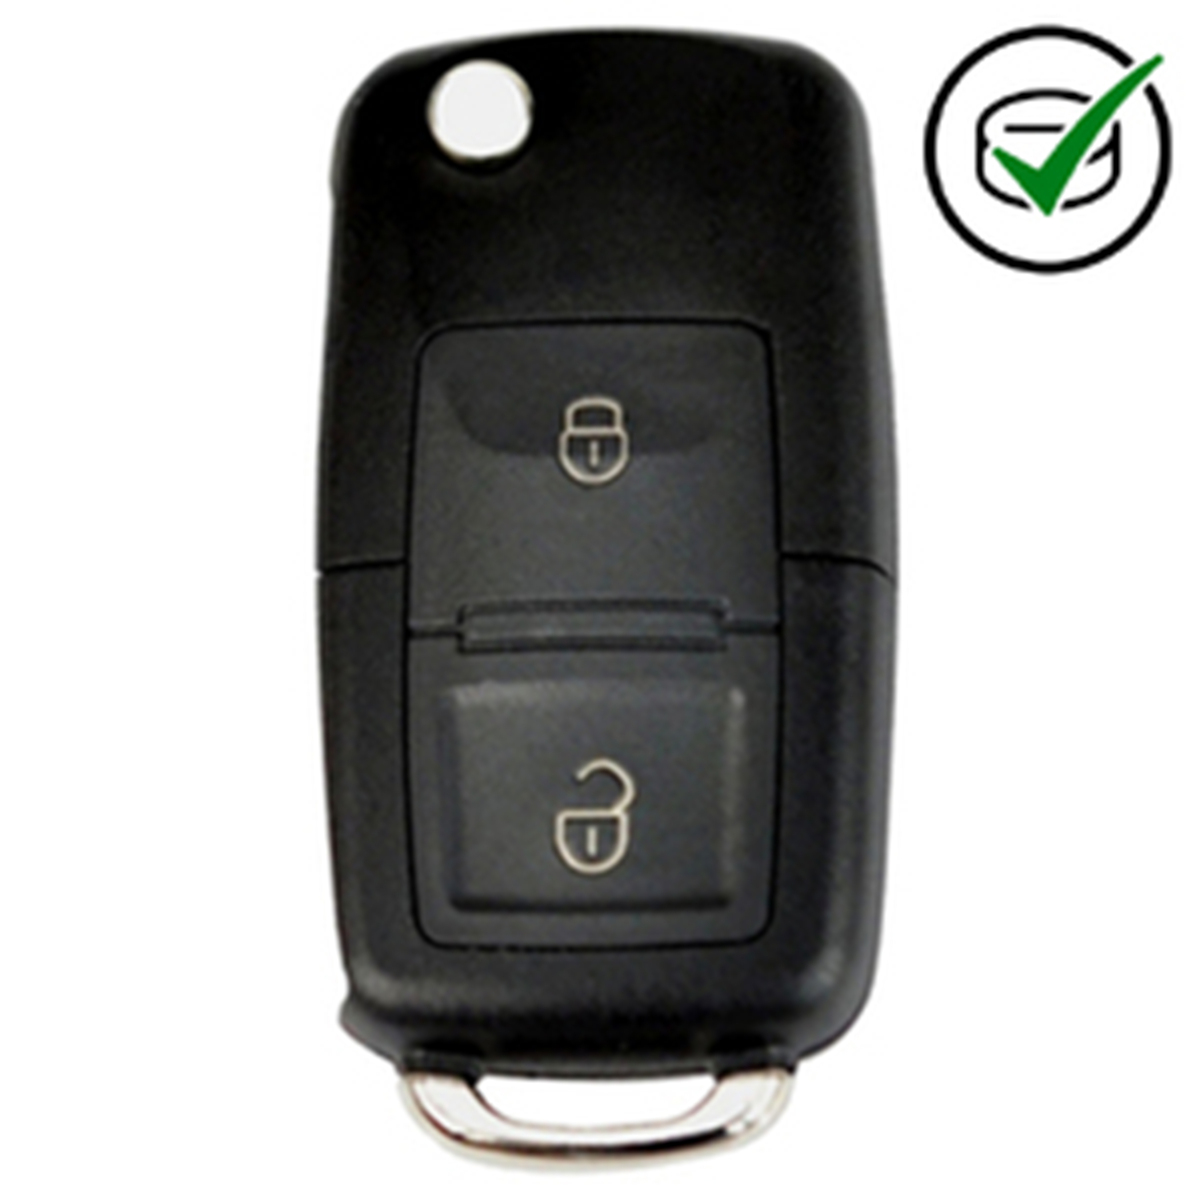 KD 900 key remote 2 button VW Style X 20